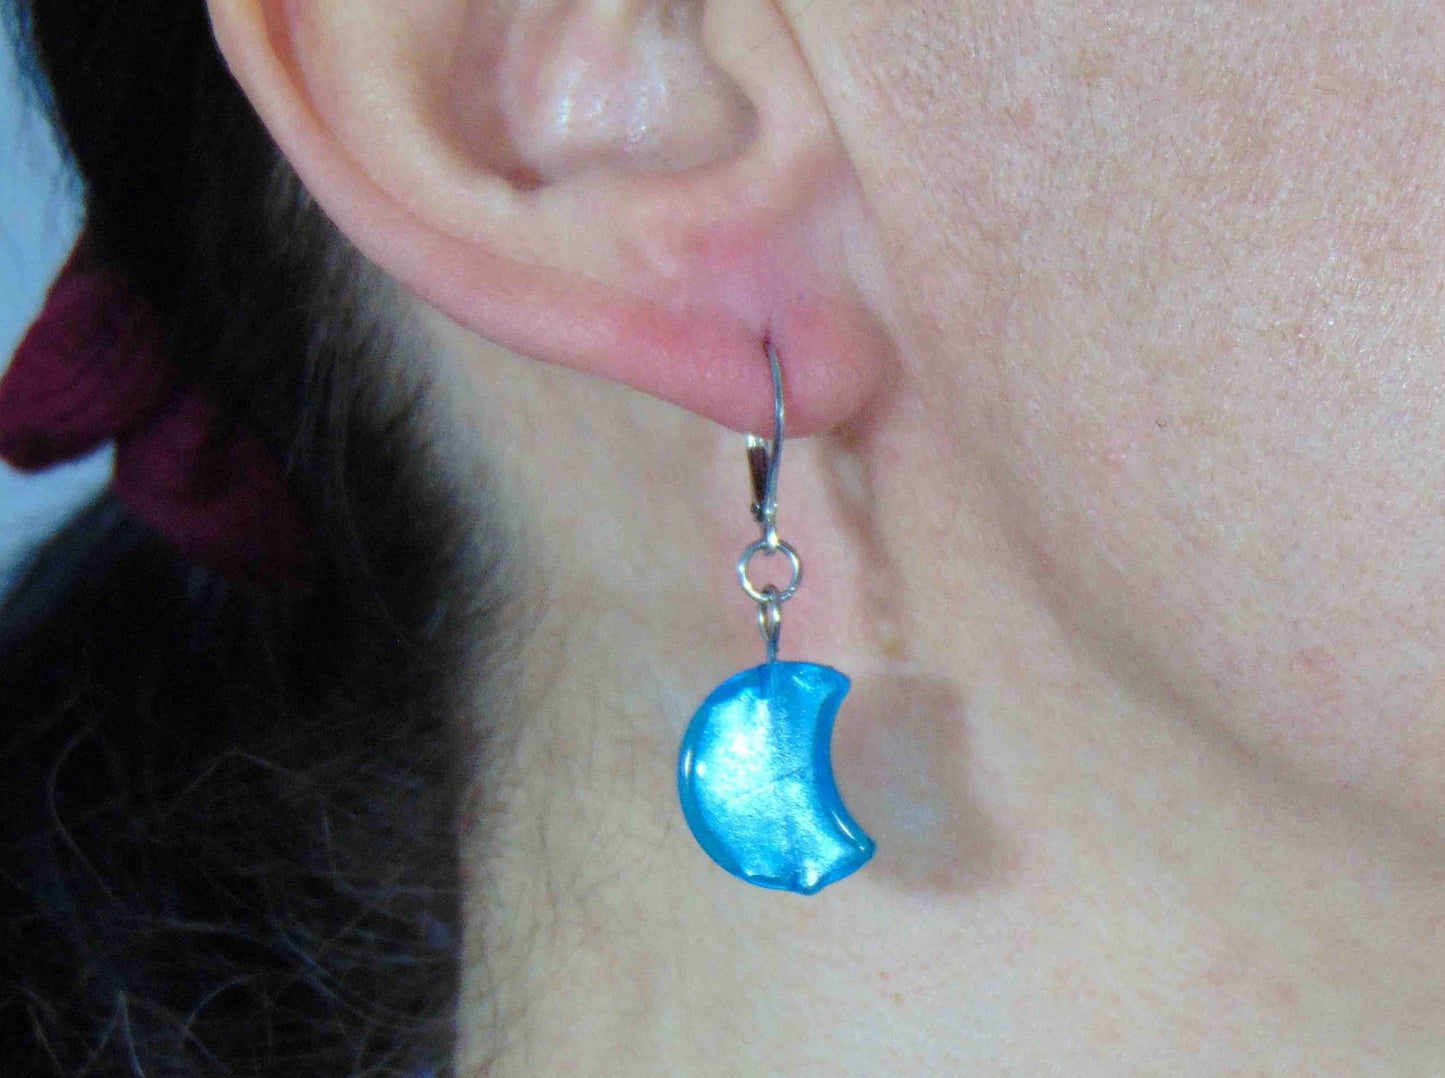 Boucles d'oreilles courtes lunes en verre de Murano turquoise vif sur feuille d'argent, crochets à levier acier inoxydable